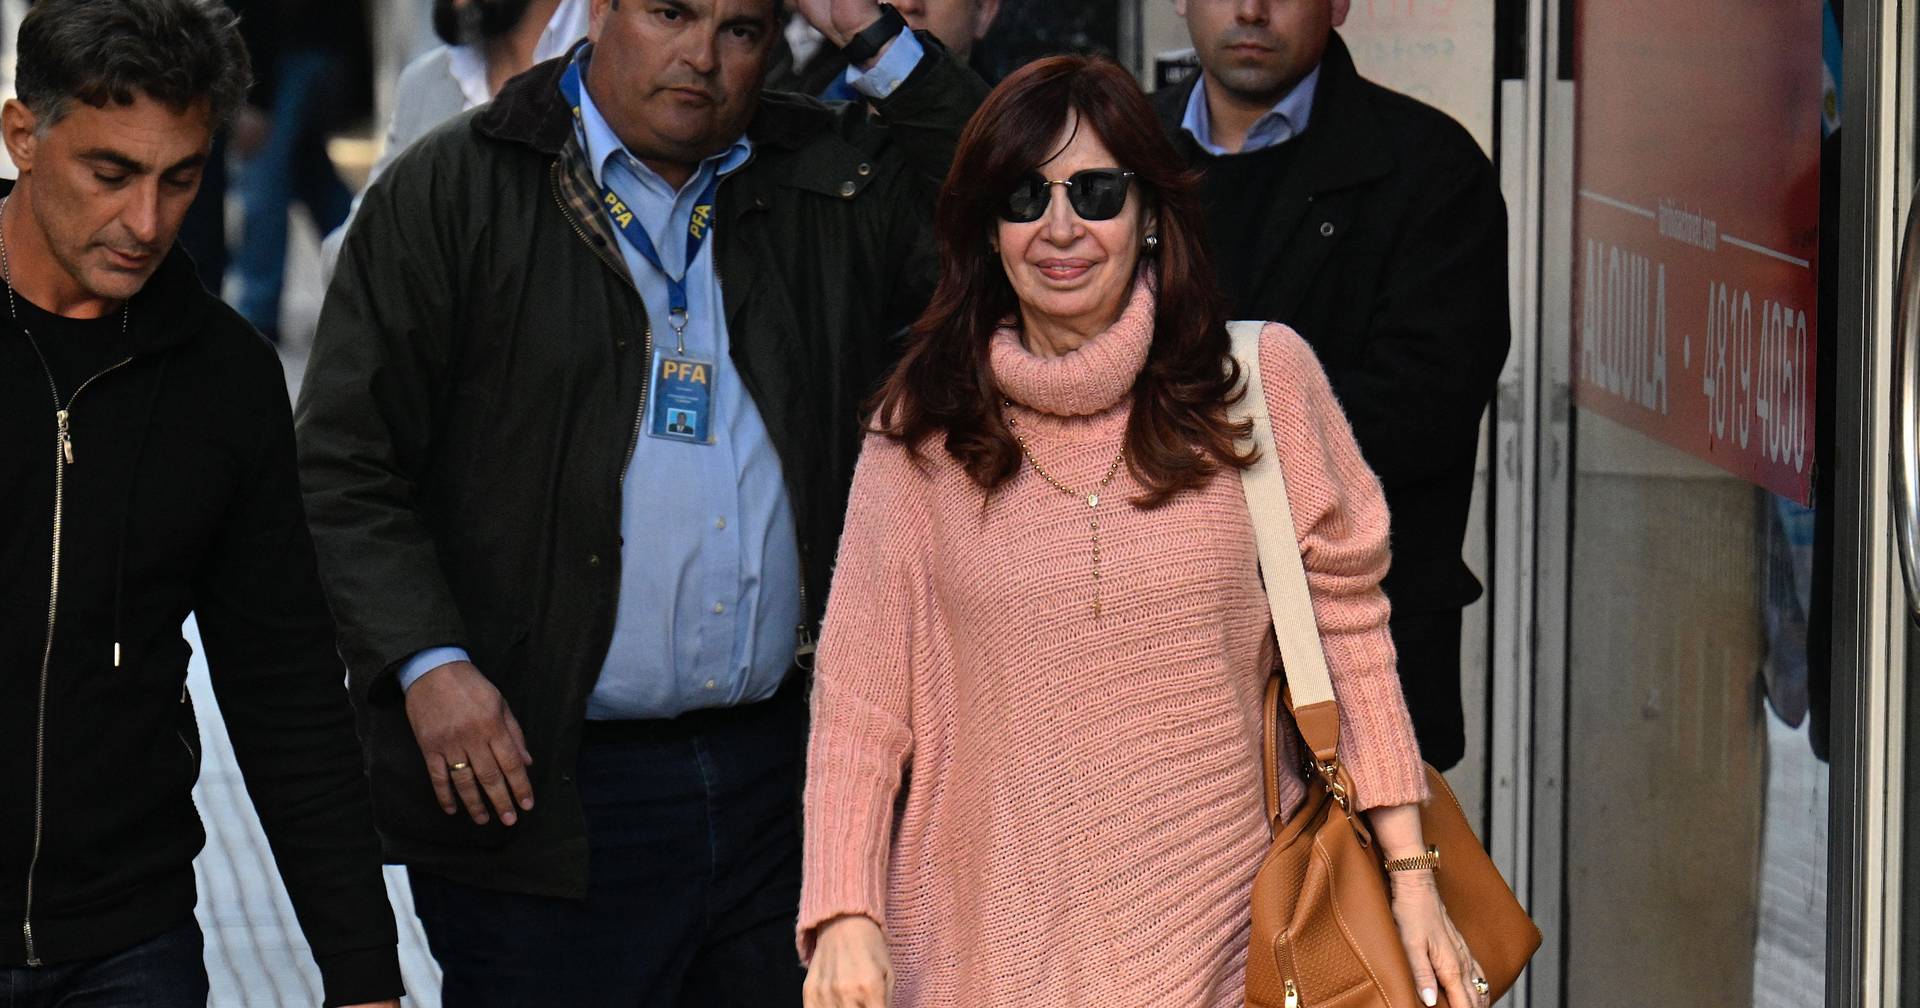 Autoridades argentinas encontram 100 projéteis na casa do homem que atacou Cristina Kirchner